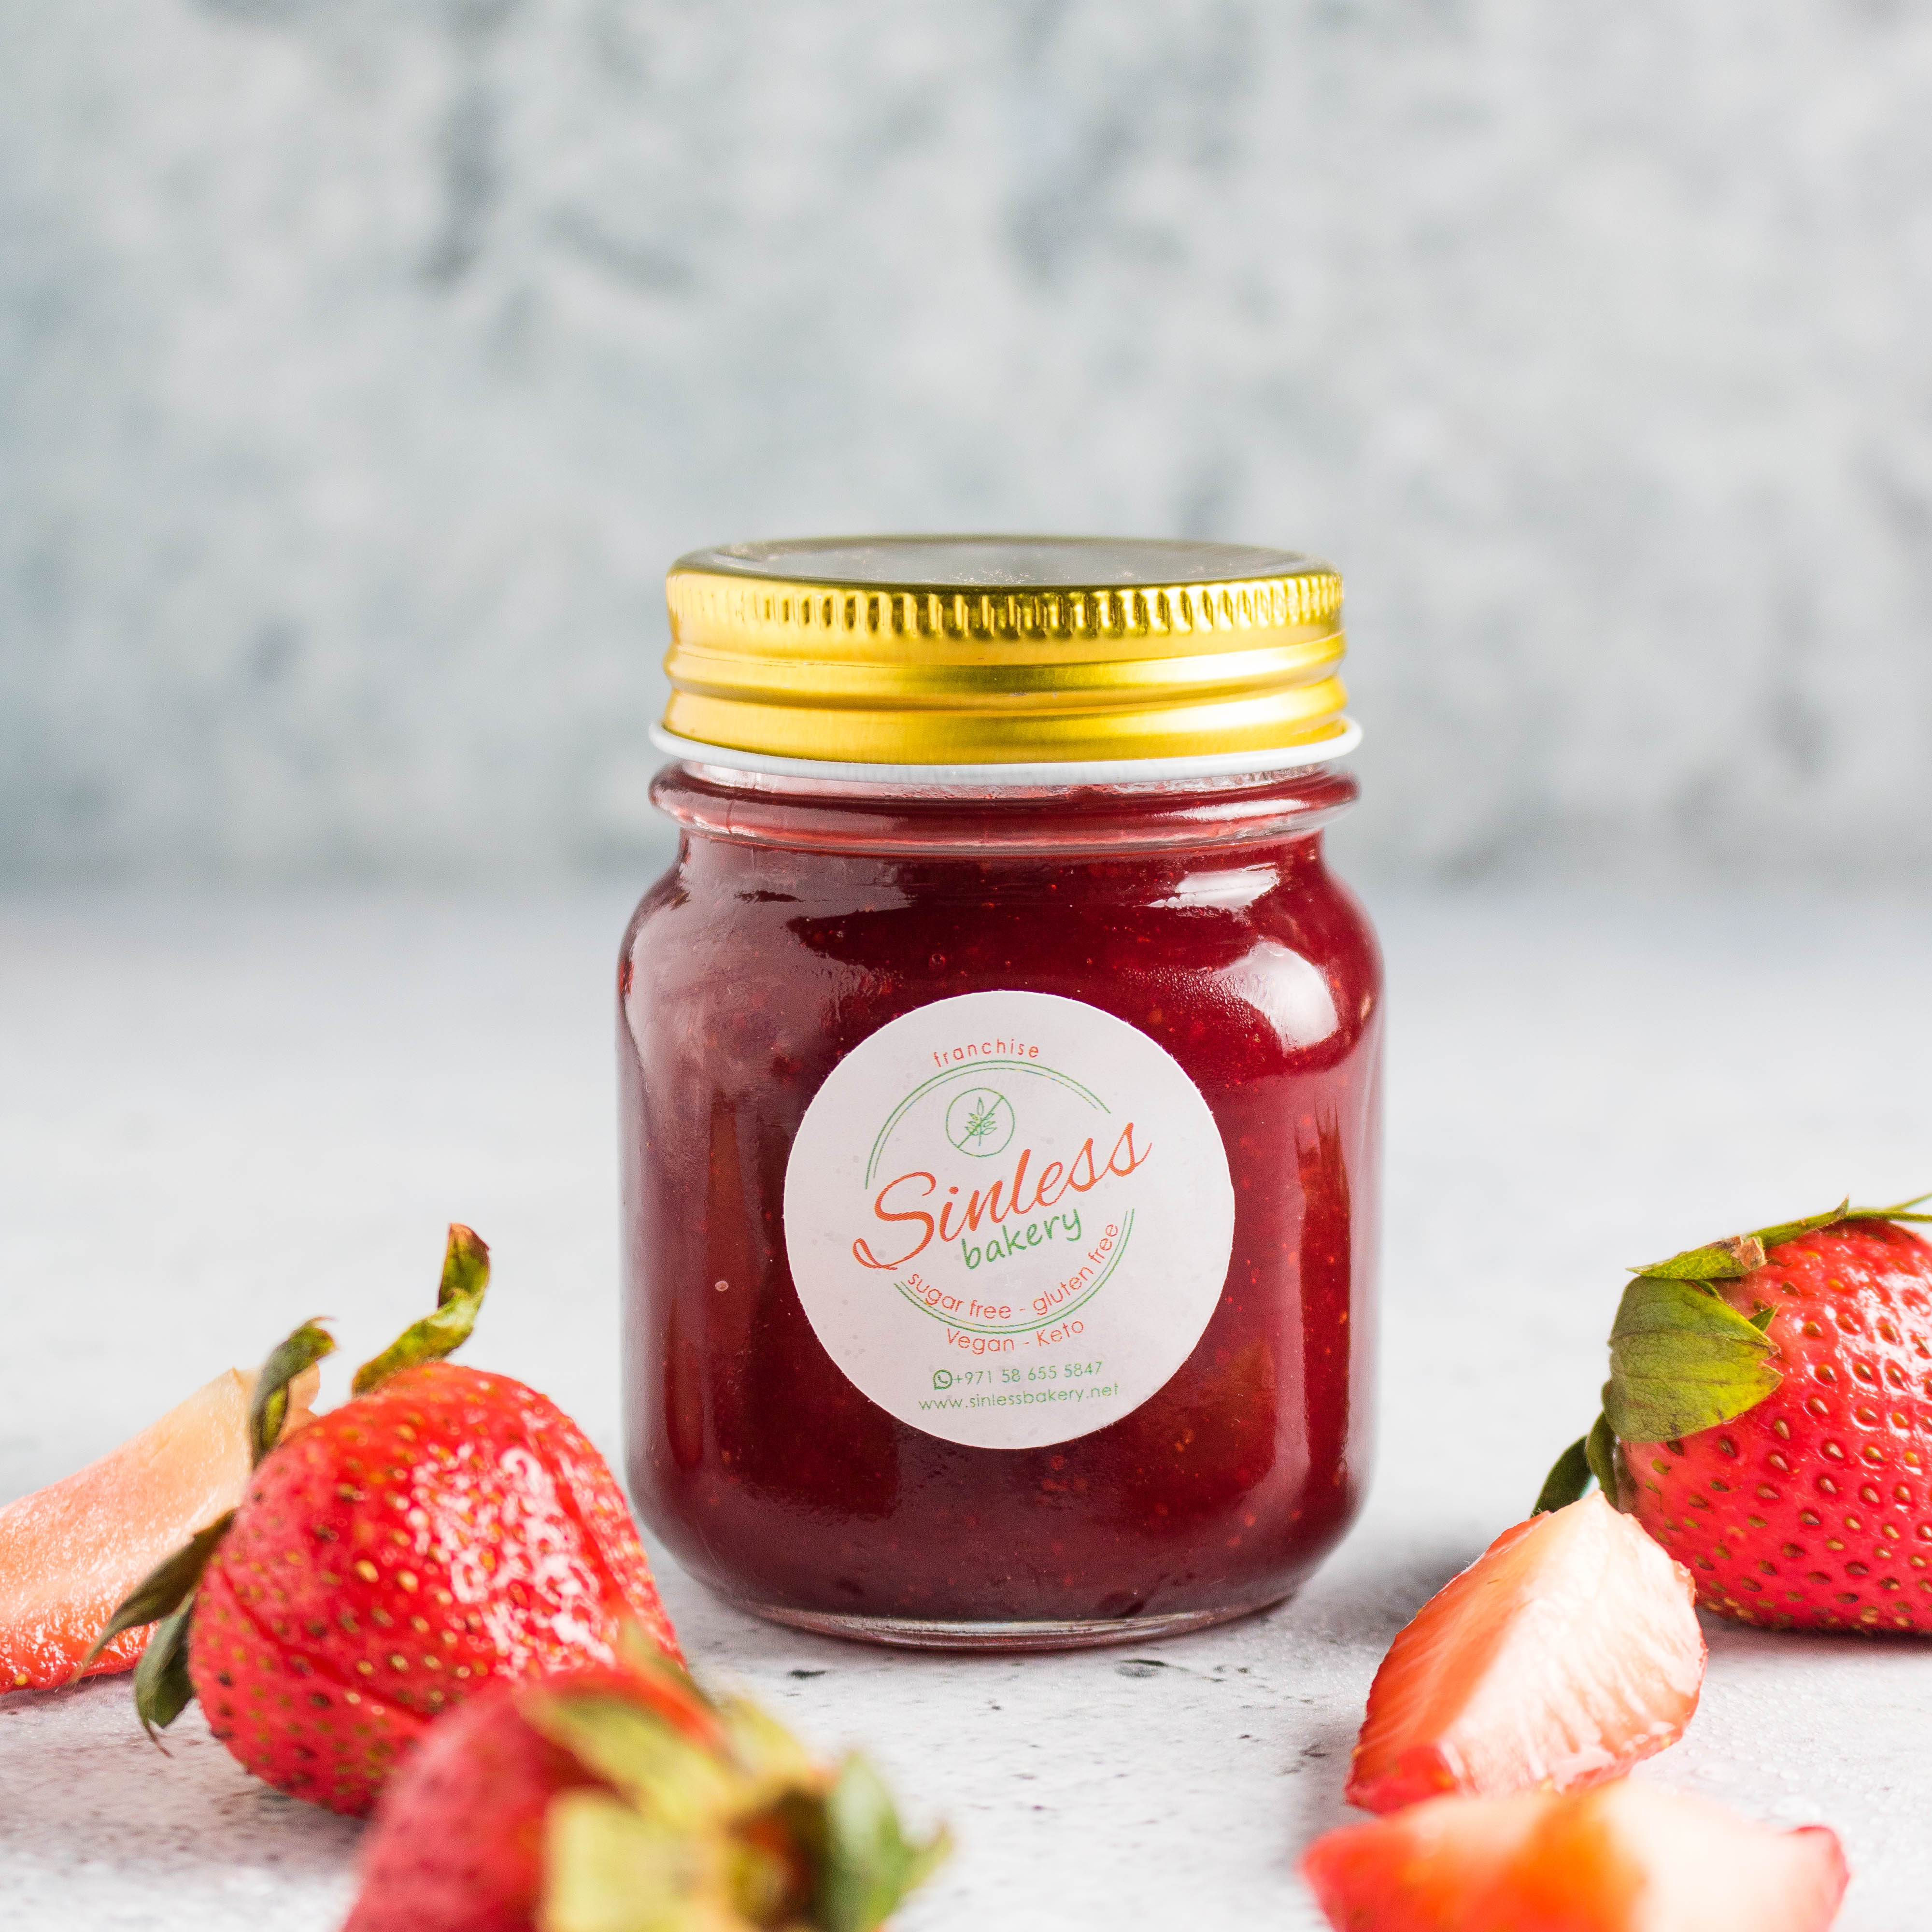 SINLESS BAKERY Keto Strawberry Jam, 200g